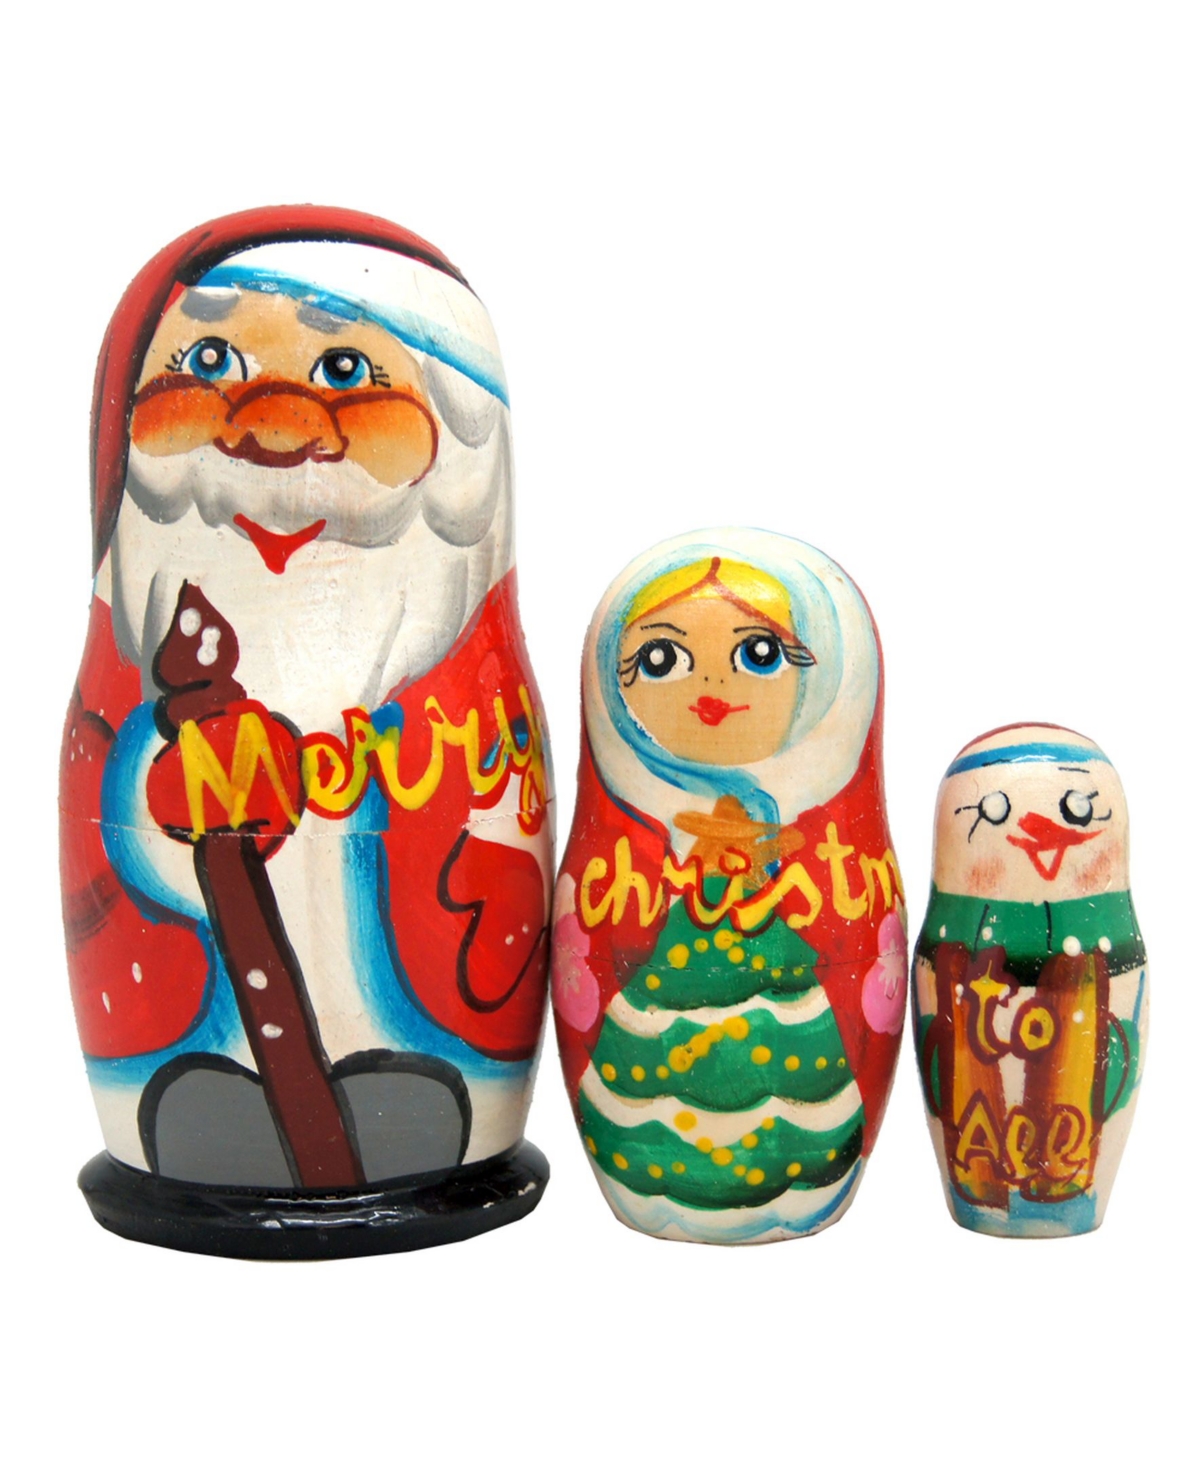 Marry Christmas Santa Family 3-Piece Russian Matryoshka Nested Dolls Set - Multi